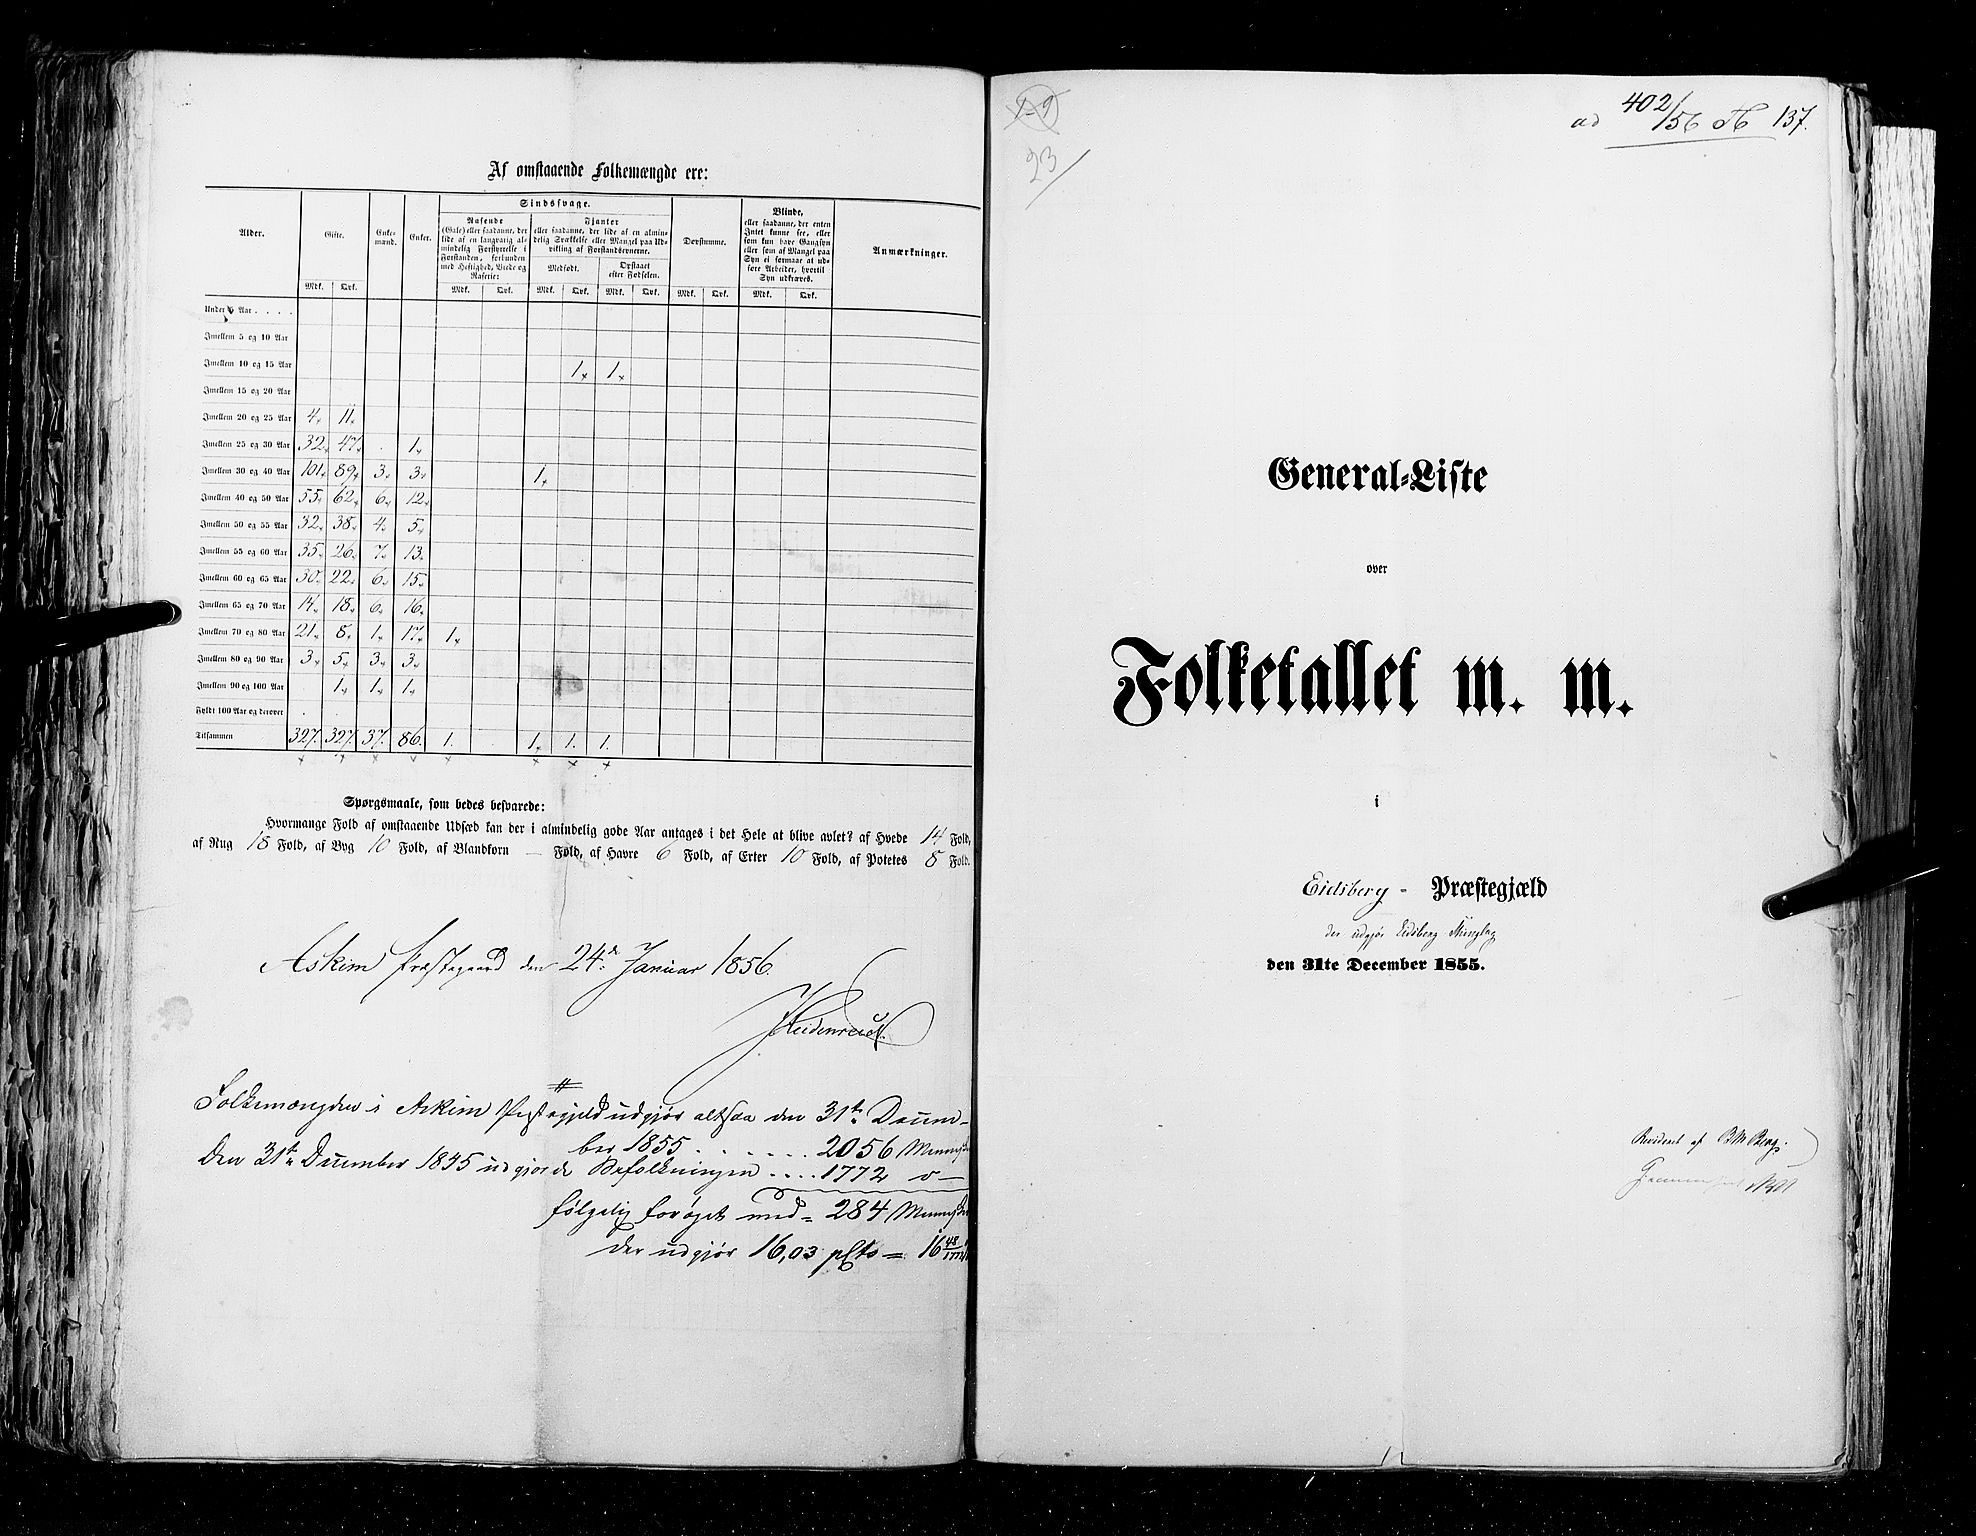 RA, Folketellingen 1855, bind 1: Akershus amt, Smålenenes amt og Hedemarken amt, 1855, s. 137